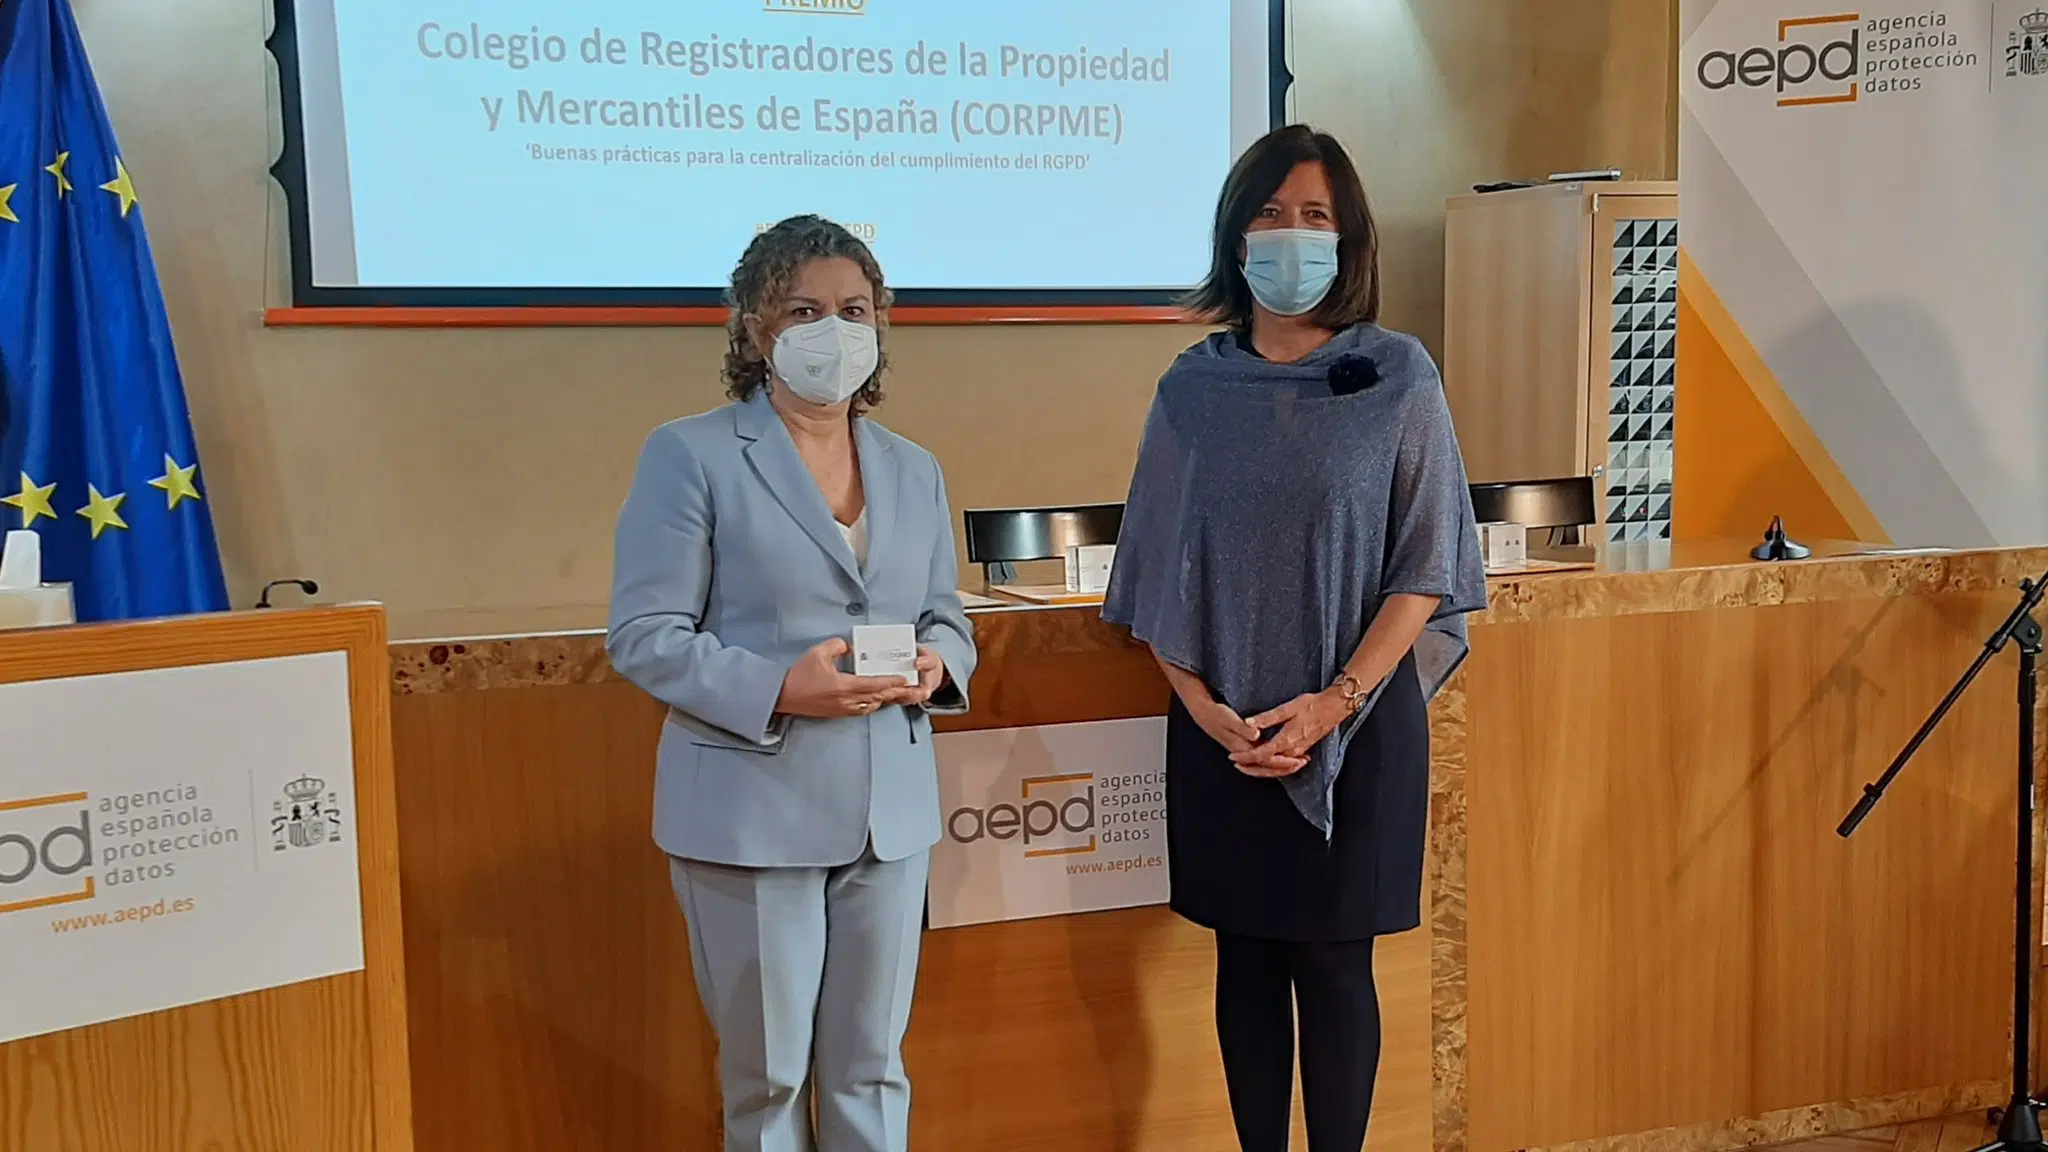 El Colegio de Registradores recibe el premio de la Agencia Española de Protección de Datos por su Guía de buenas prácticas